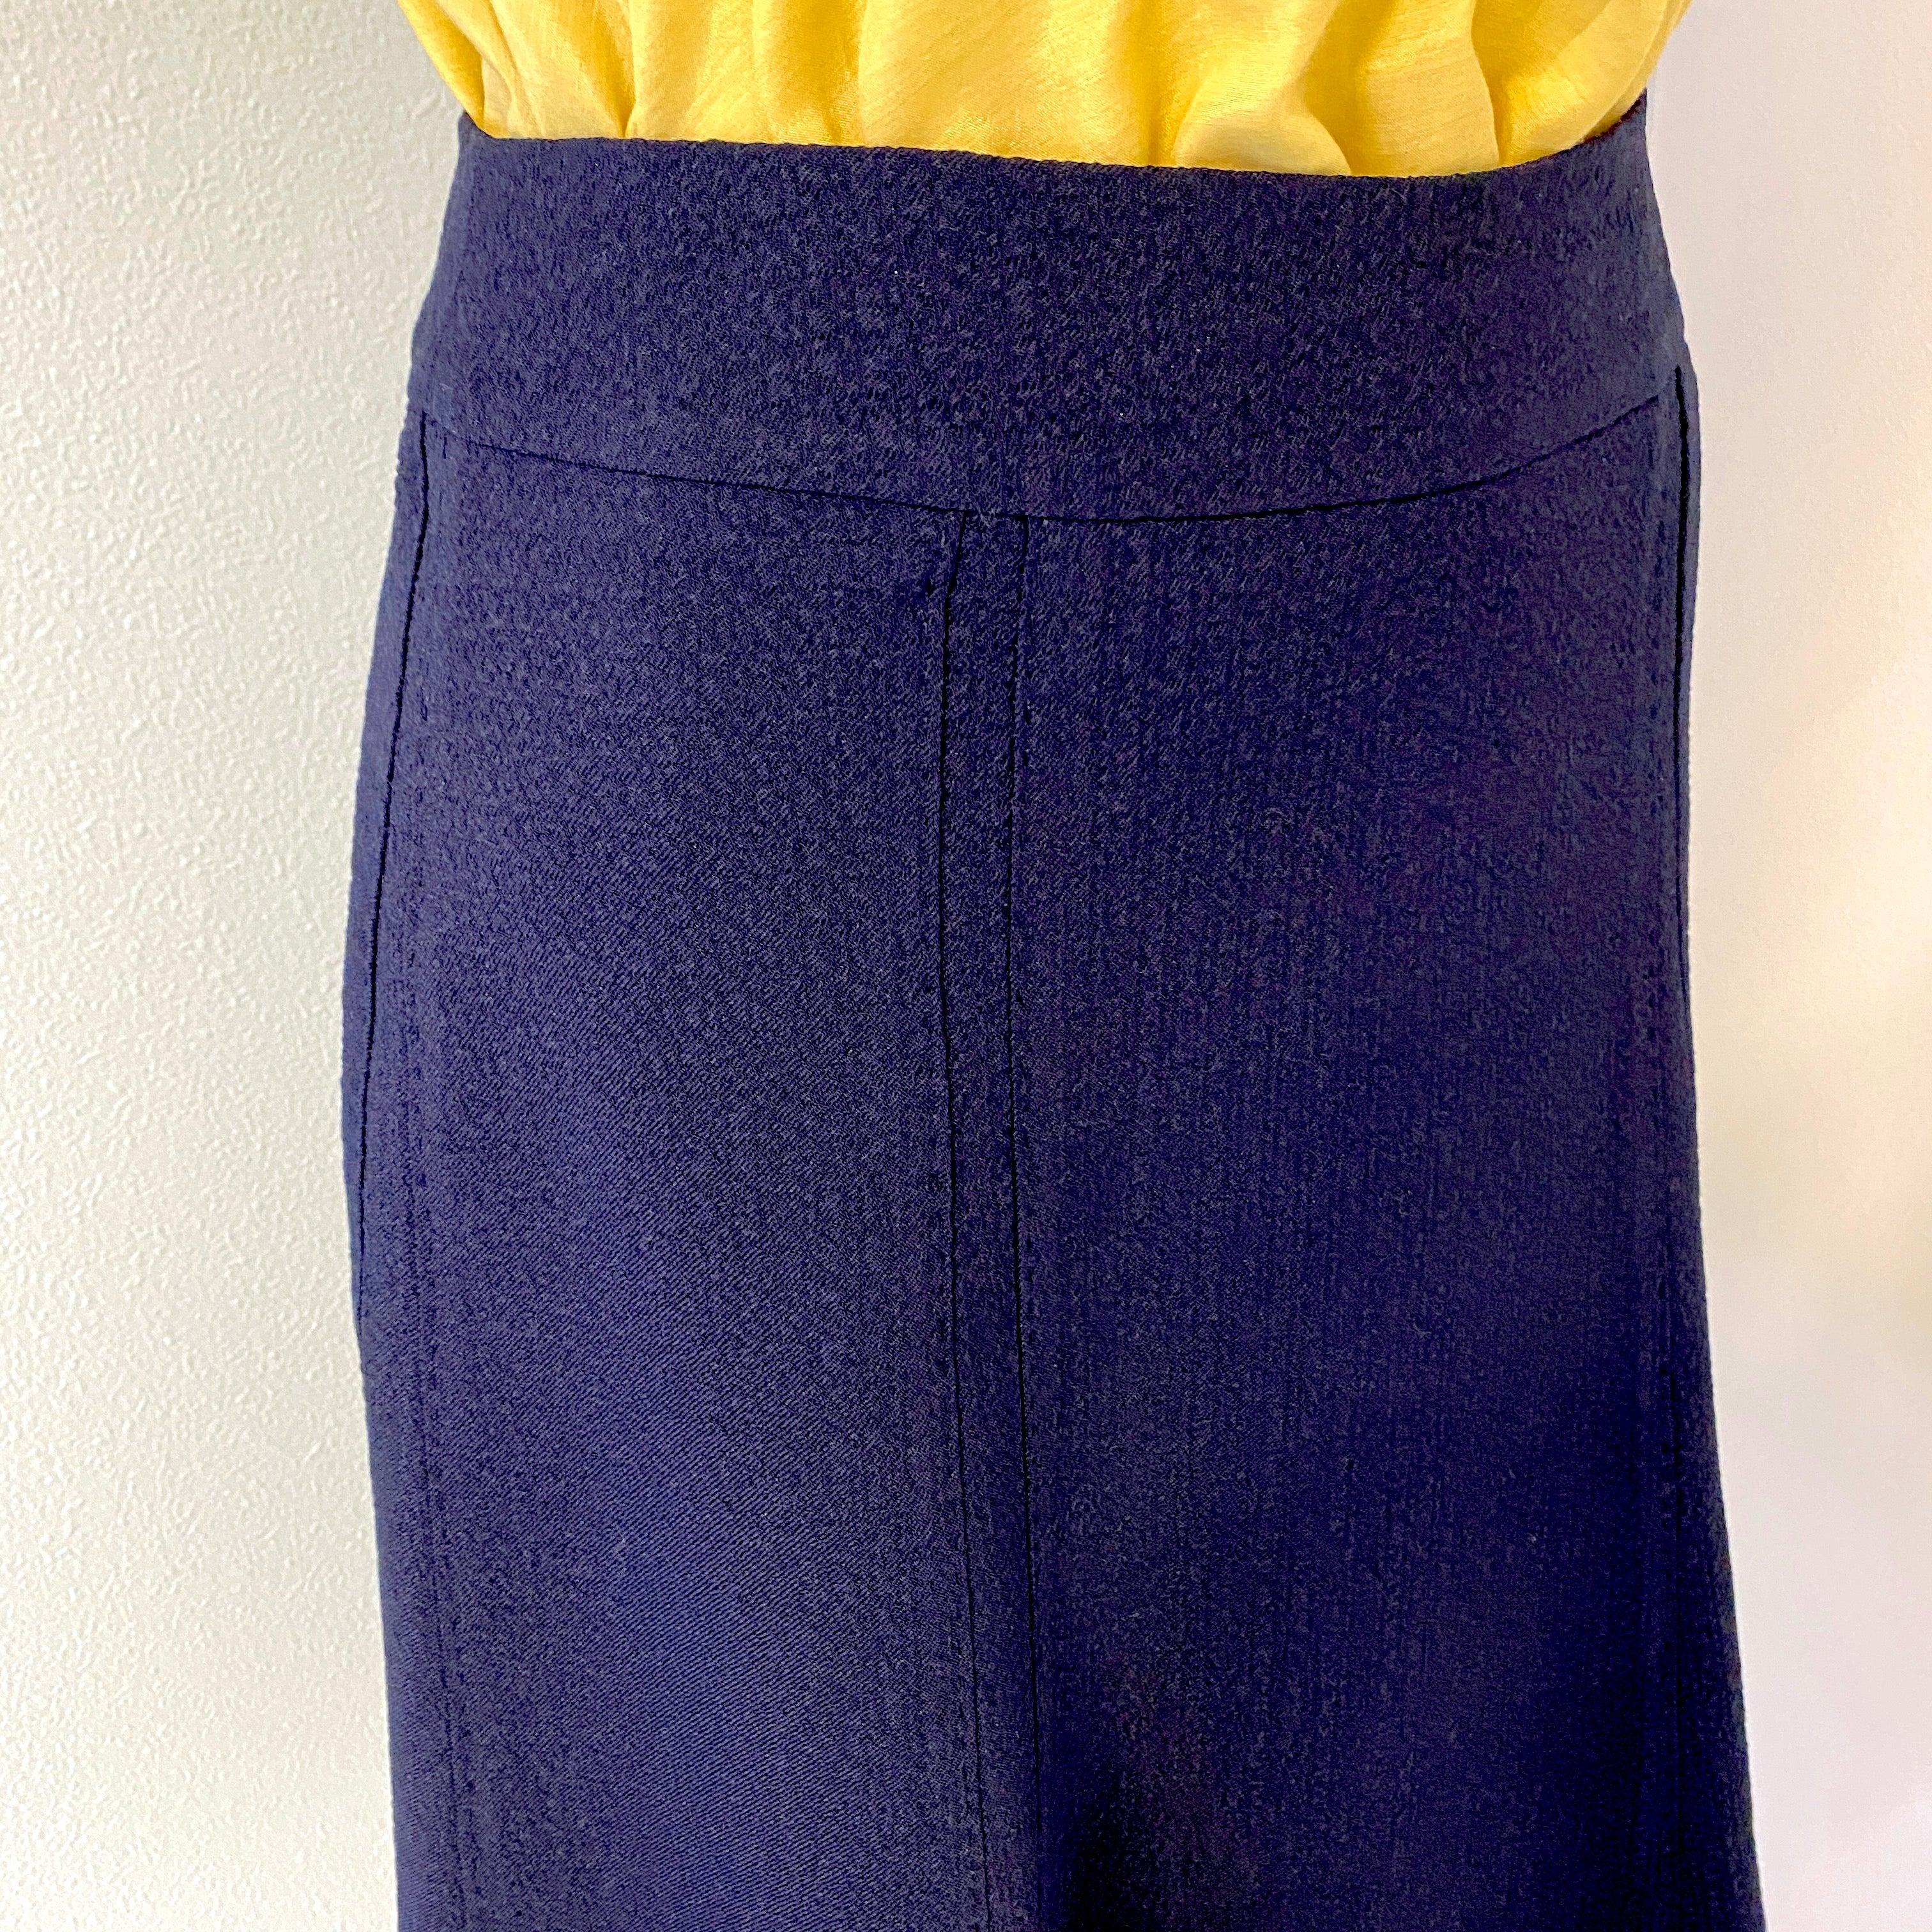 丸襟ノースリーブの黄色ブラウスとネイビーのシンプルなスカート